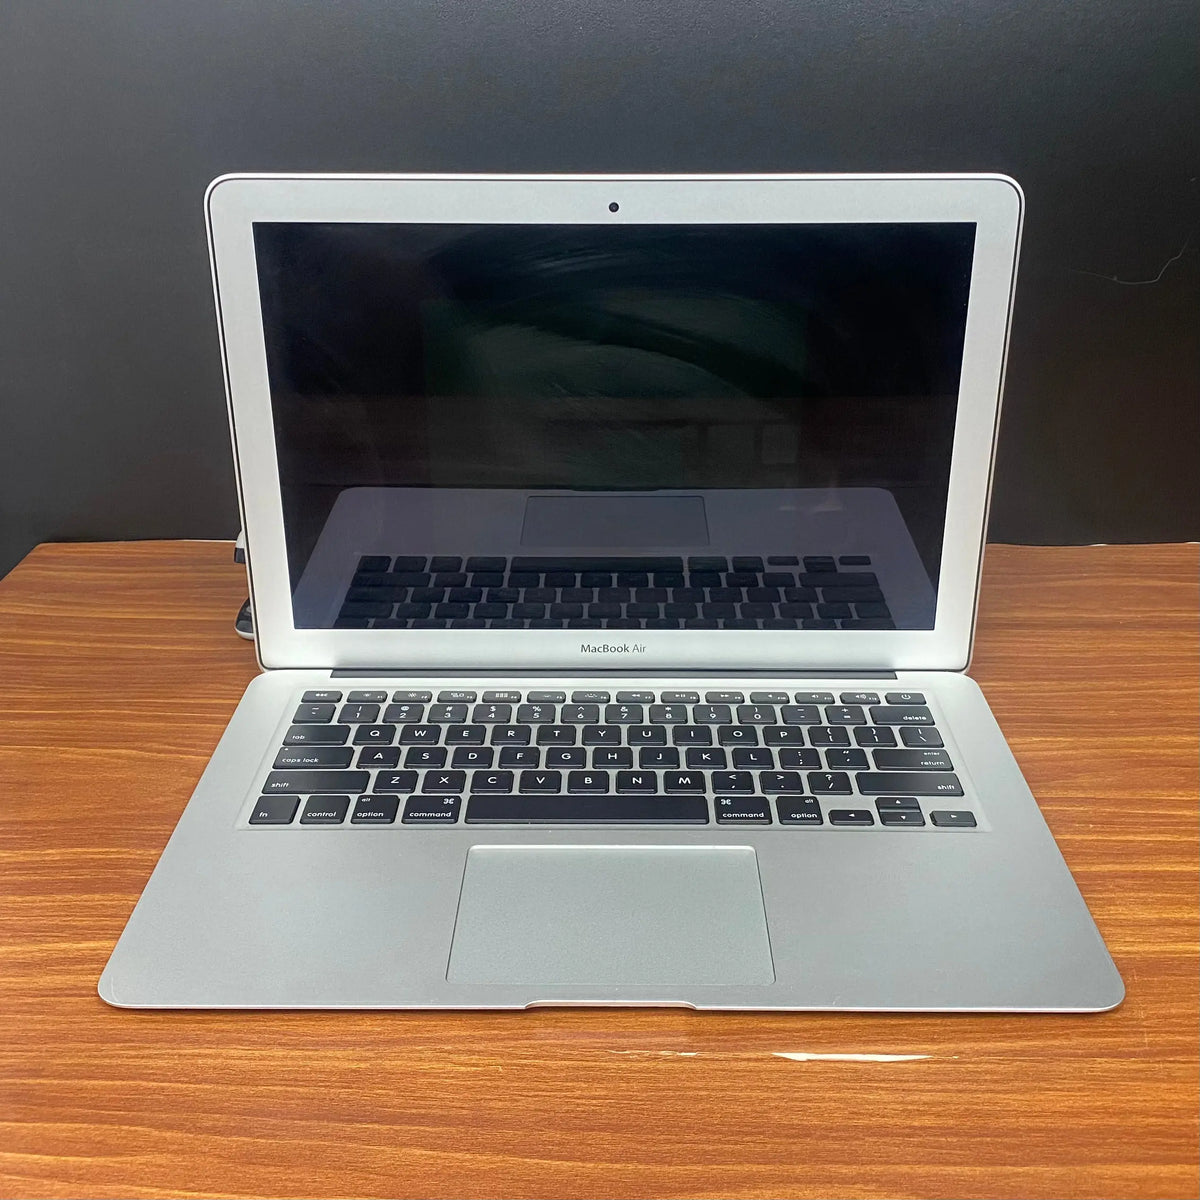 Comprar MacBook Air usado - Macbook Air 13 i5 2015 - TrocaTech Seminovos